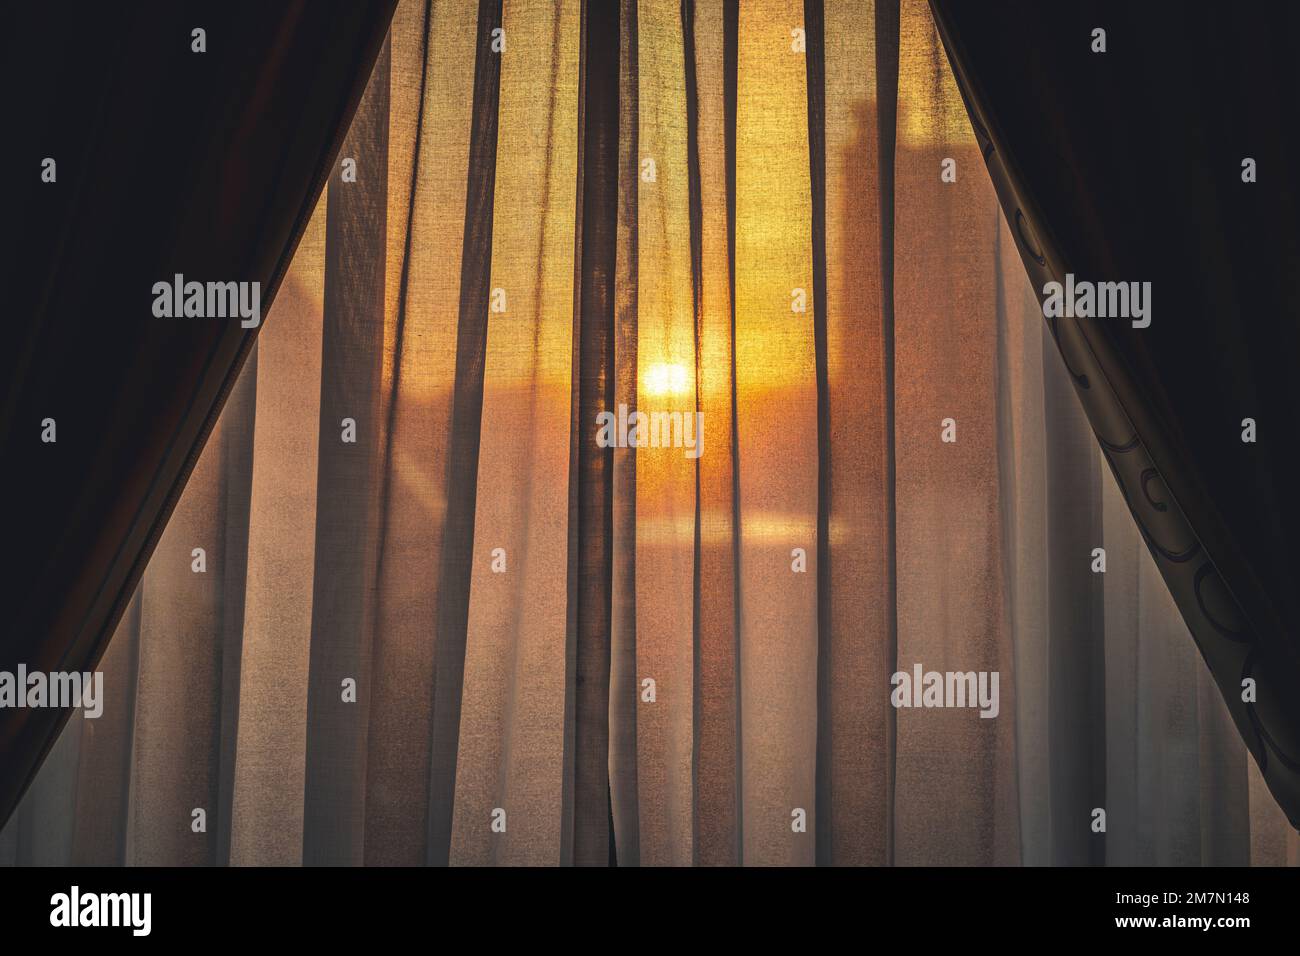 Sonnenaufgang, Blick durch den halbtransparenten Vorhang des Hotelzimmers, Hintergrundbeleuchtung, Silhouette der Stadt nur schwach sichtbar Stockfoto